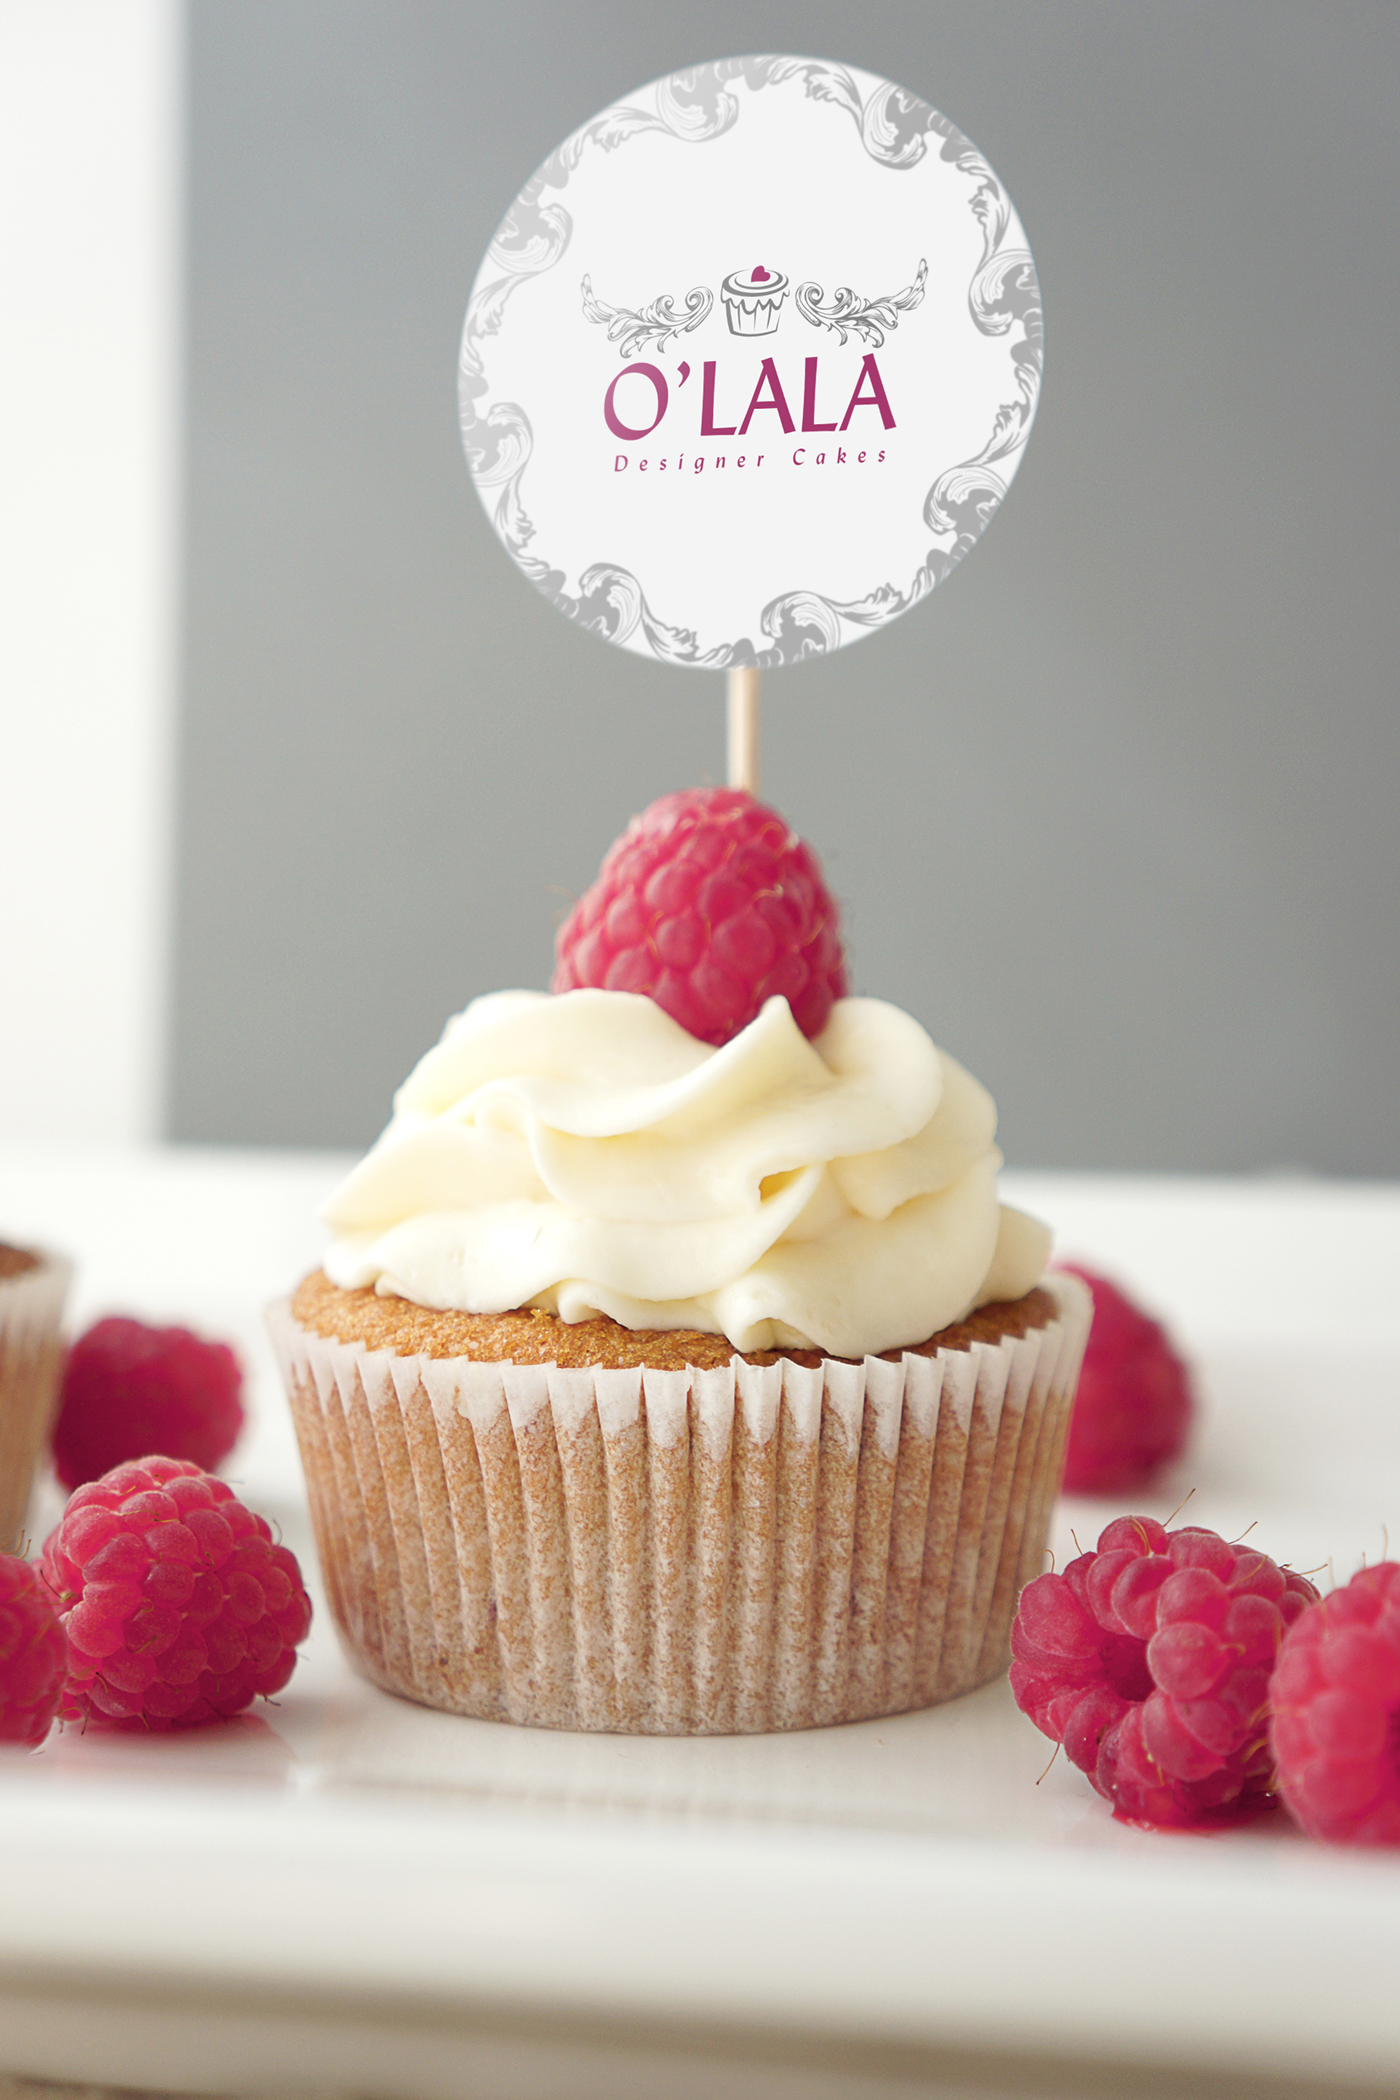 Graphic designe logo cake 3d cakes desserts cupcake] gift brand O'lala custom-made 3D cakes dubai